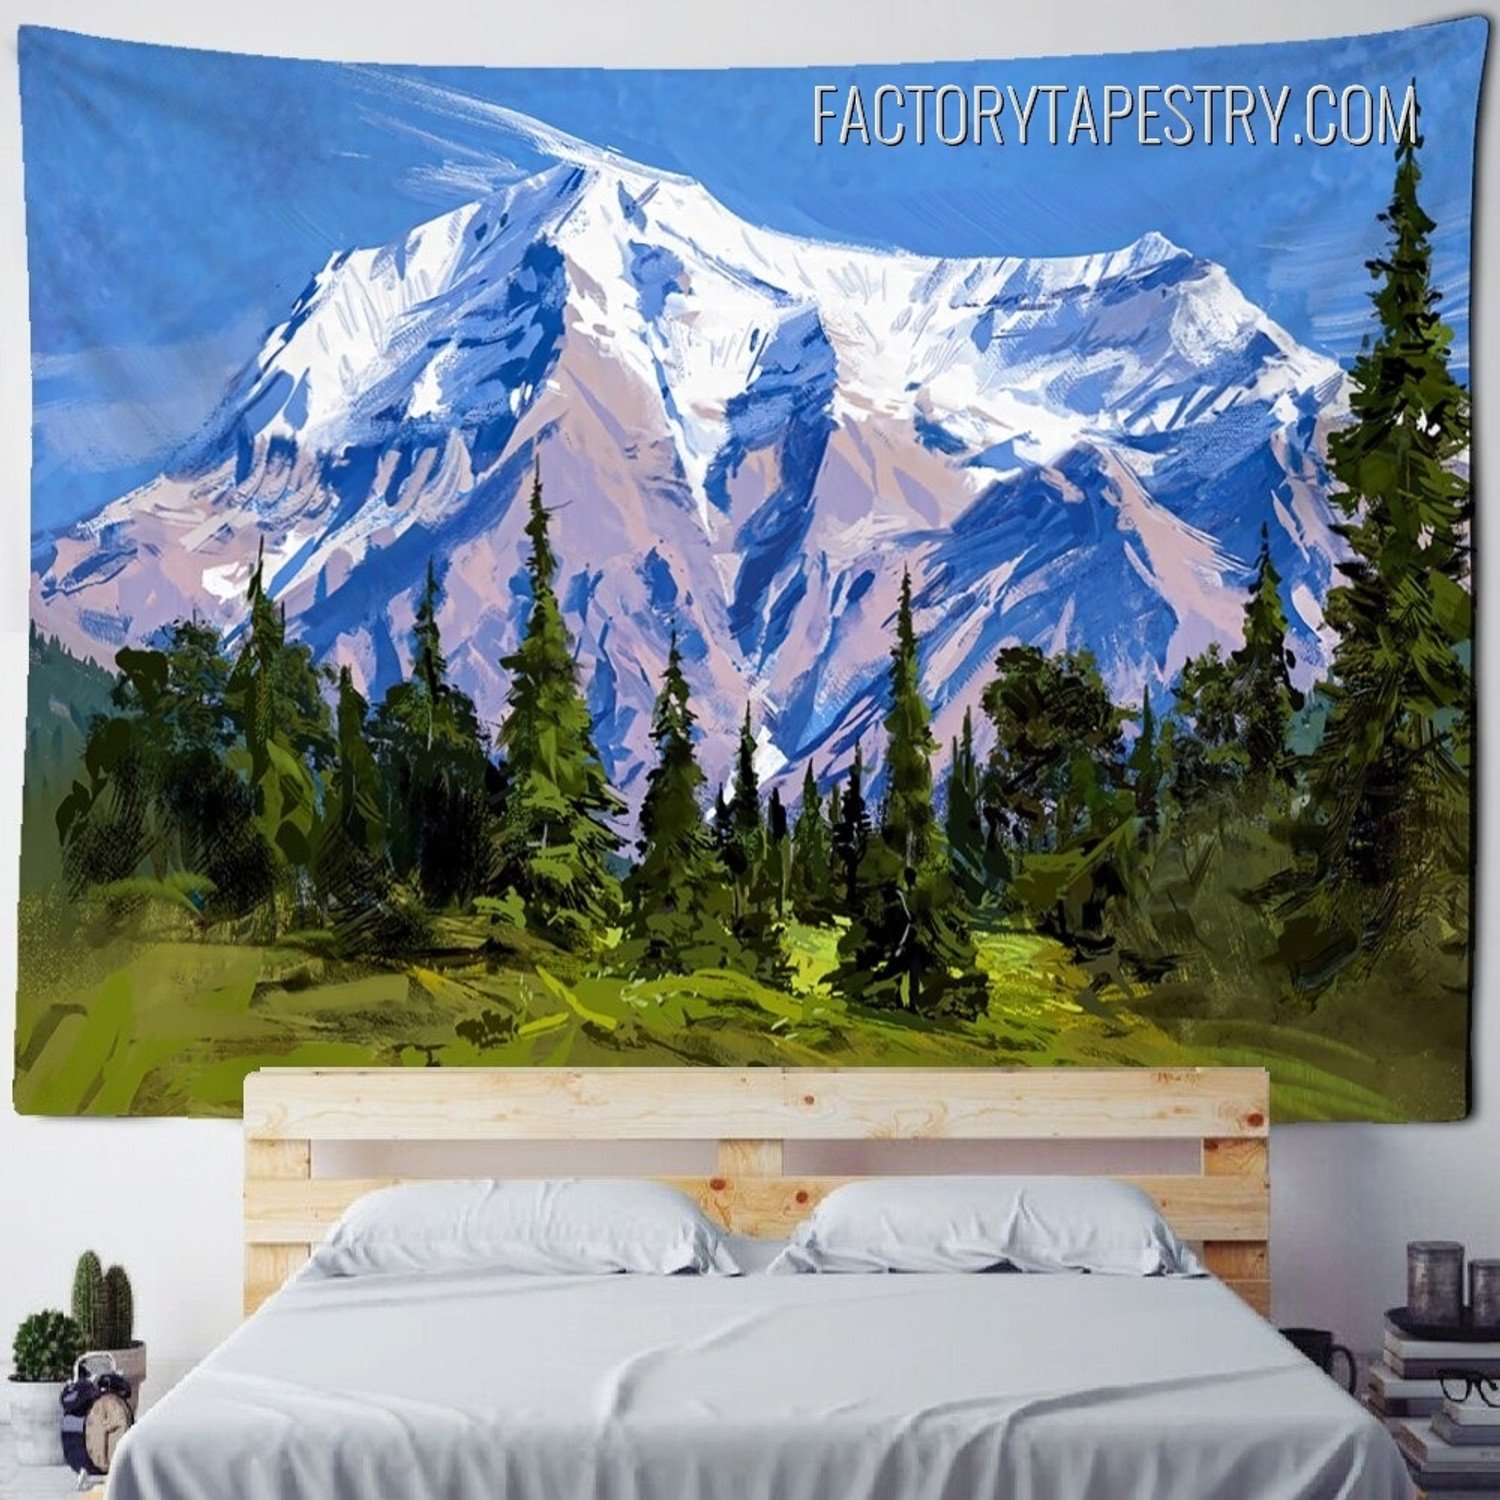 Mountain Glacier Nature Landscape Retro Wall Decor Tapestry for Home Decoration